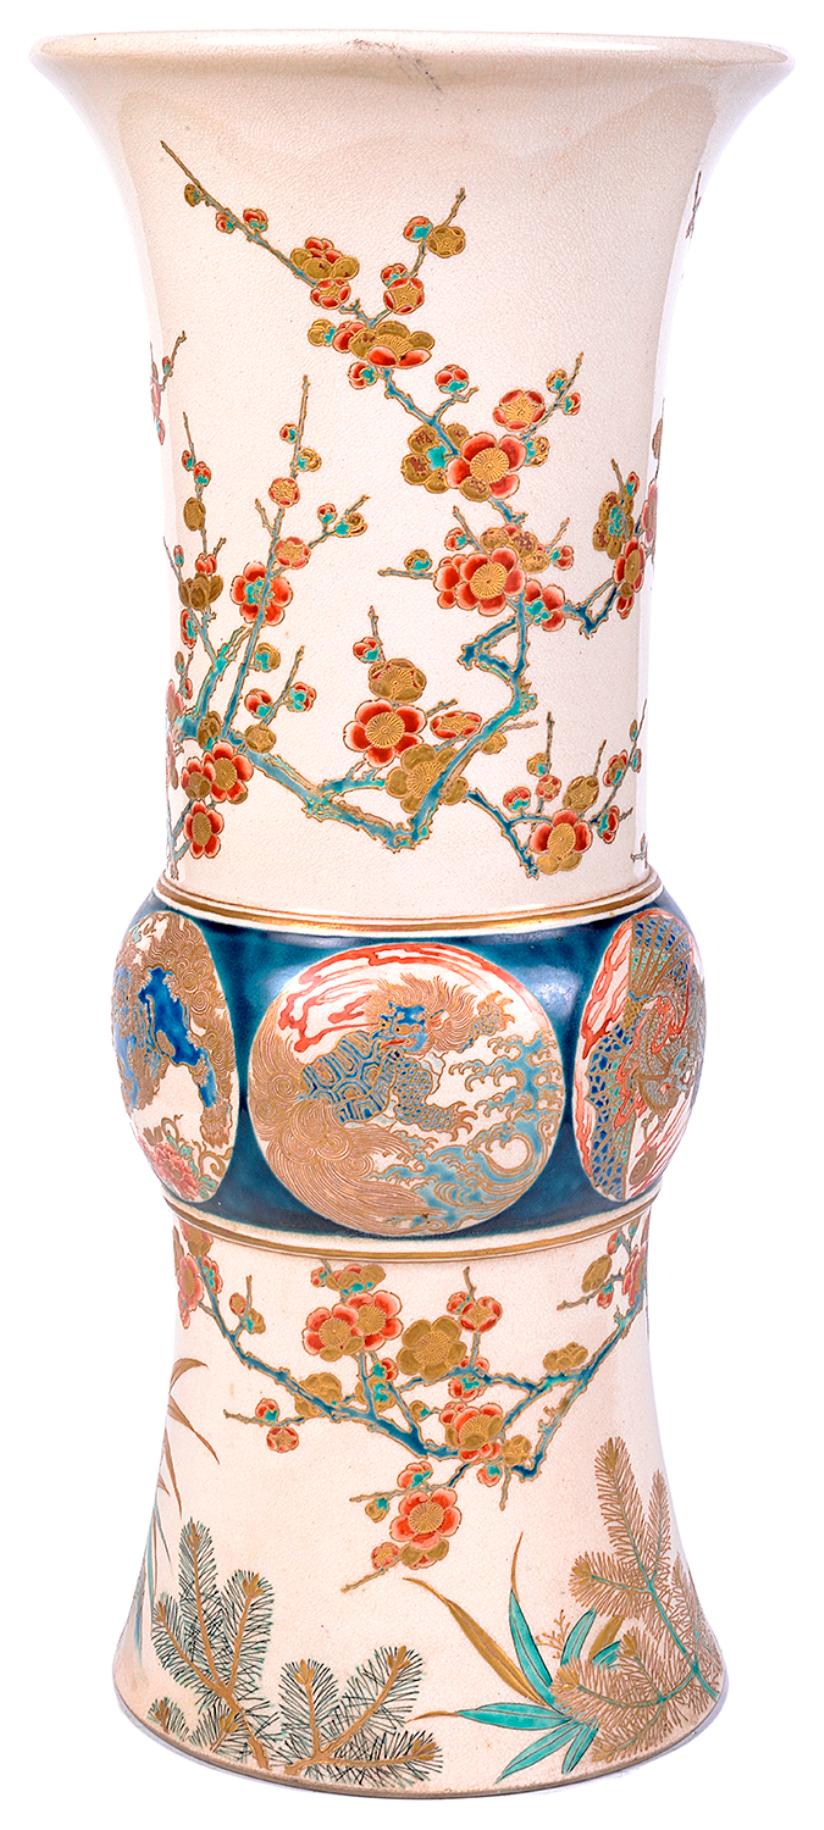 Vase Satsuma japonais du 19ème siècle de bonne qualité, d'influence impériale, avec un fond bleu foncé, une décoration d'arbres en fleurs sur le col évasé, des panneaux circulaires peints au centre représentant des dragons mythiques. Signé à la base.